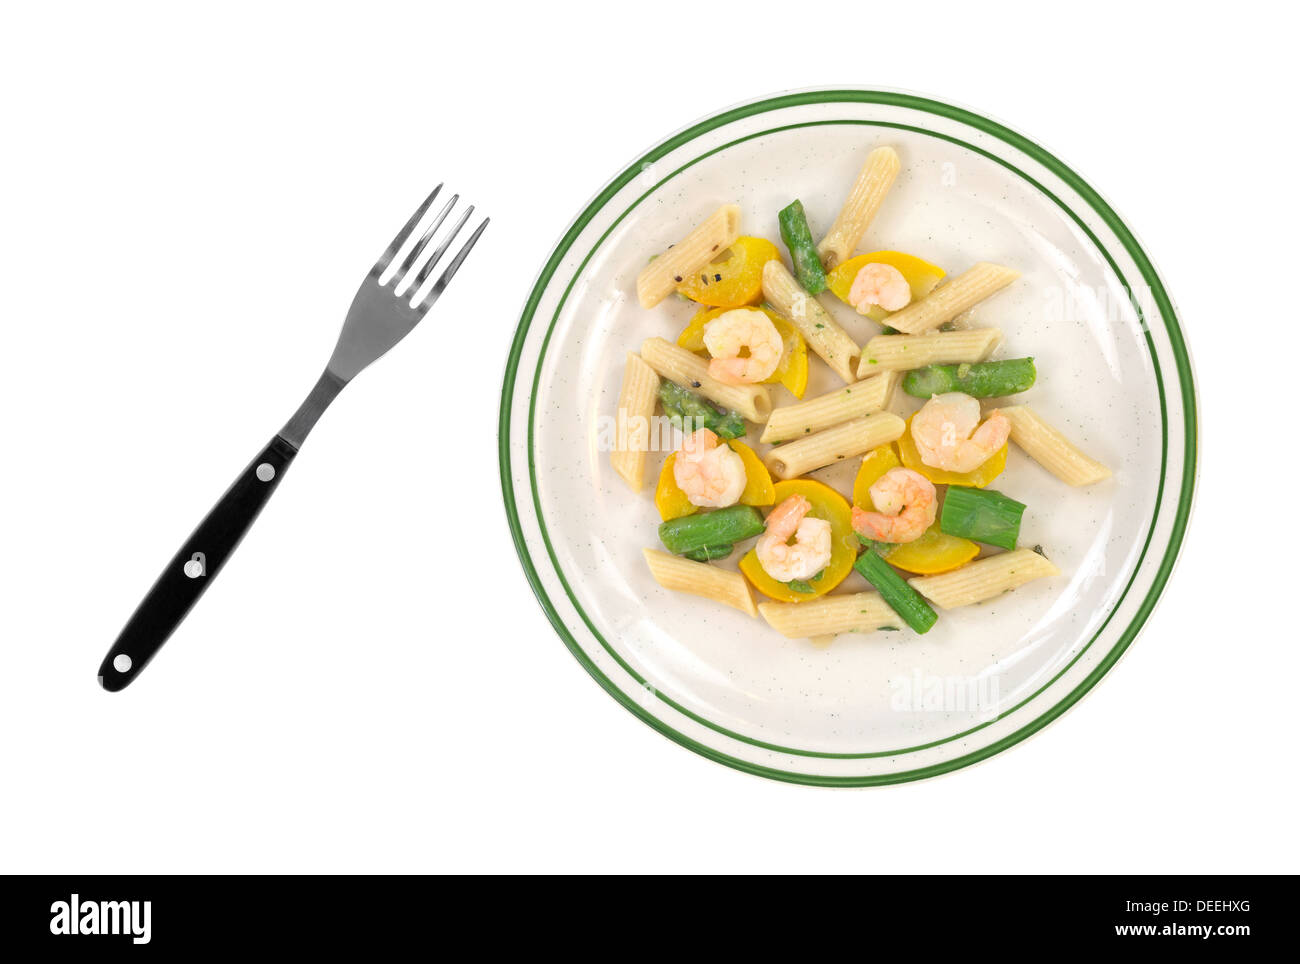 Vue de dessus d'un régime alimentaire repas de crevettes, asperges, courgettes et pâtes penne sur une assiette avec une fourchette sur le côté. Banque D'Images